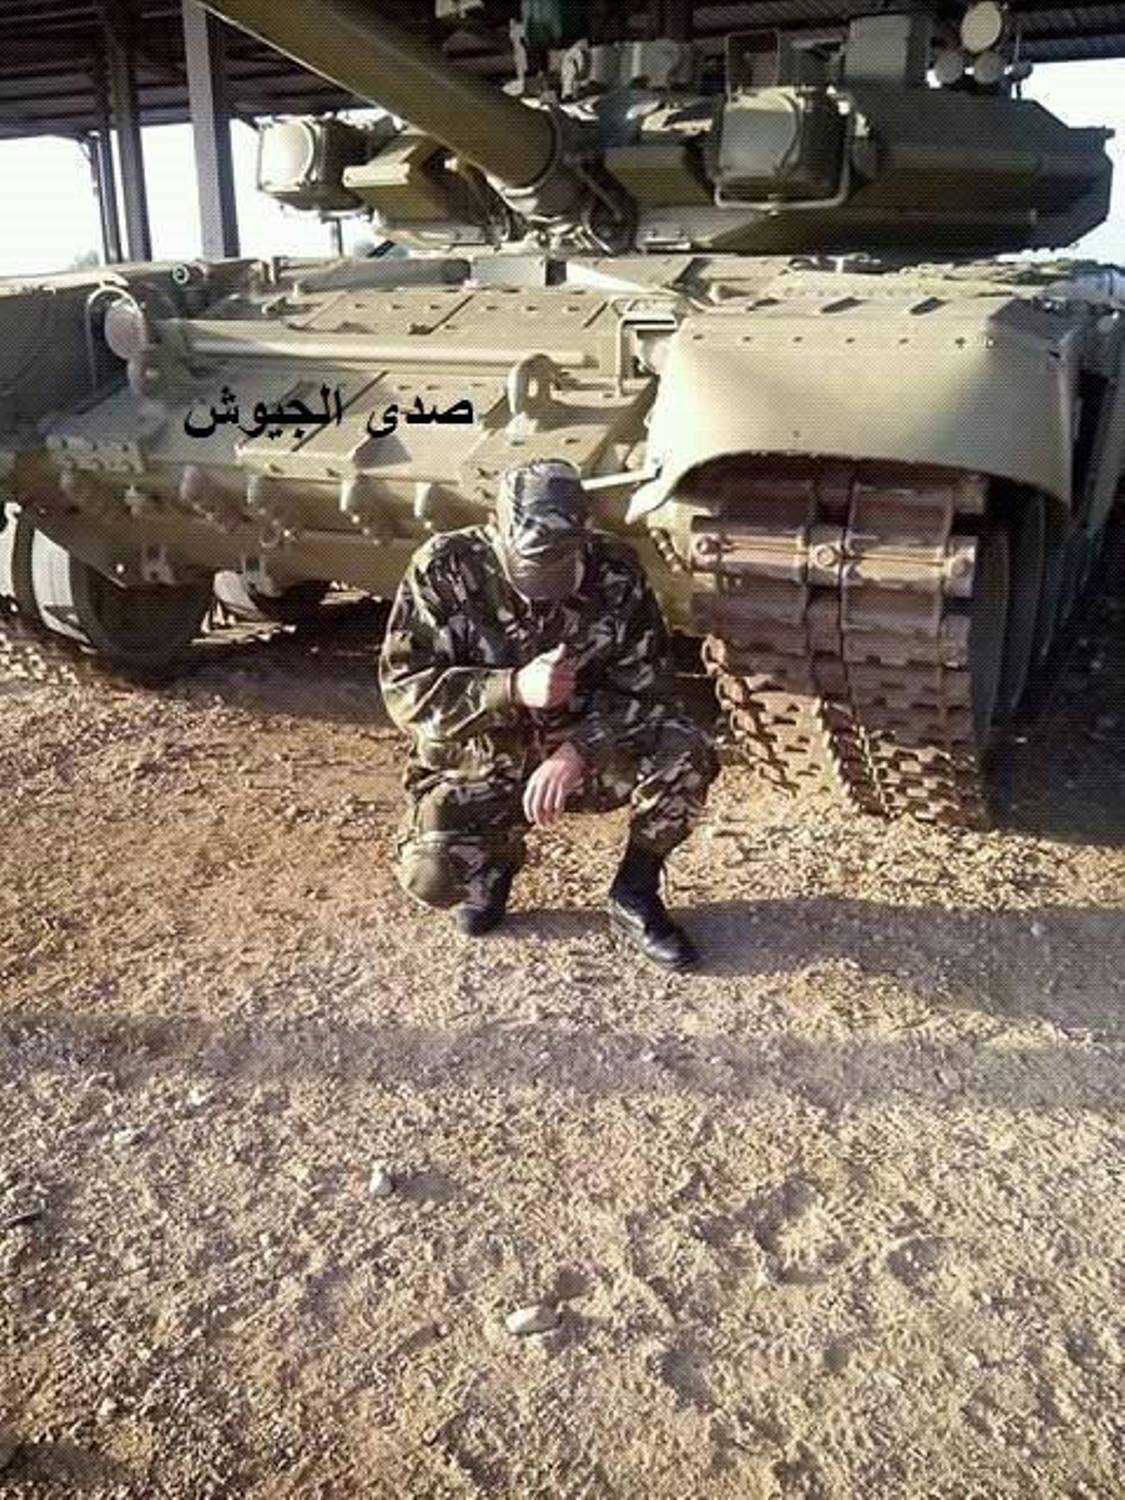 صور دبابات قتال رئيسية الجزائرية T-90SA ] Main Battle Tank Algerian ]  - صفحة 5 31355612386_cd4212ed72_o